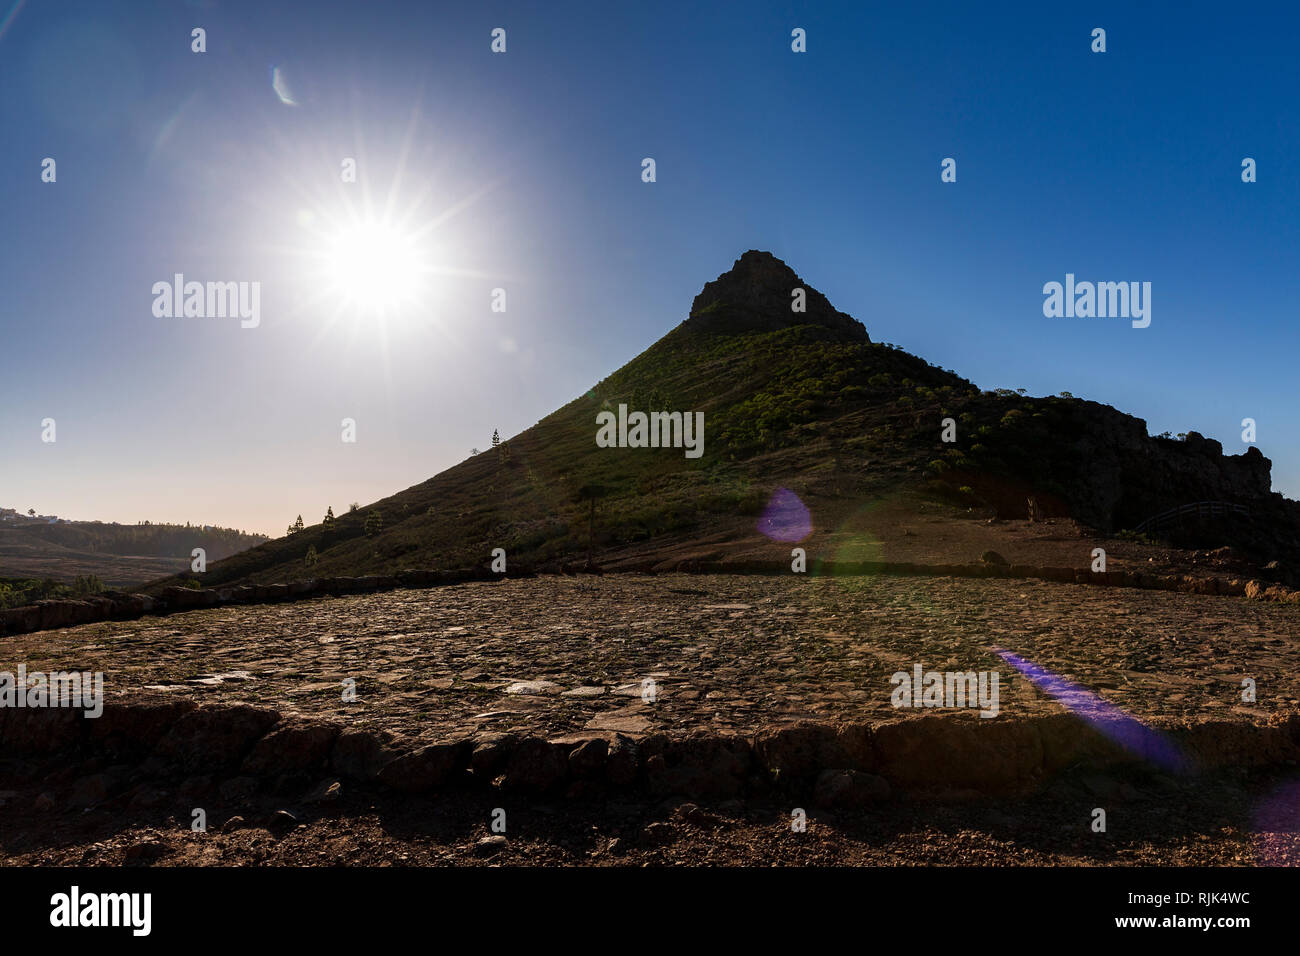 Sun flare Erstellt von Aufnahmen in der Sonne mit dem spitzen Roque Imoque und eine Tenne, era in Ifonche, Arona, Teneriffa, Kanarische Inseln, Spai Stockfoto